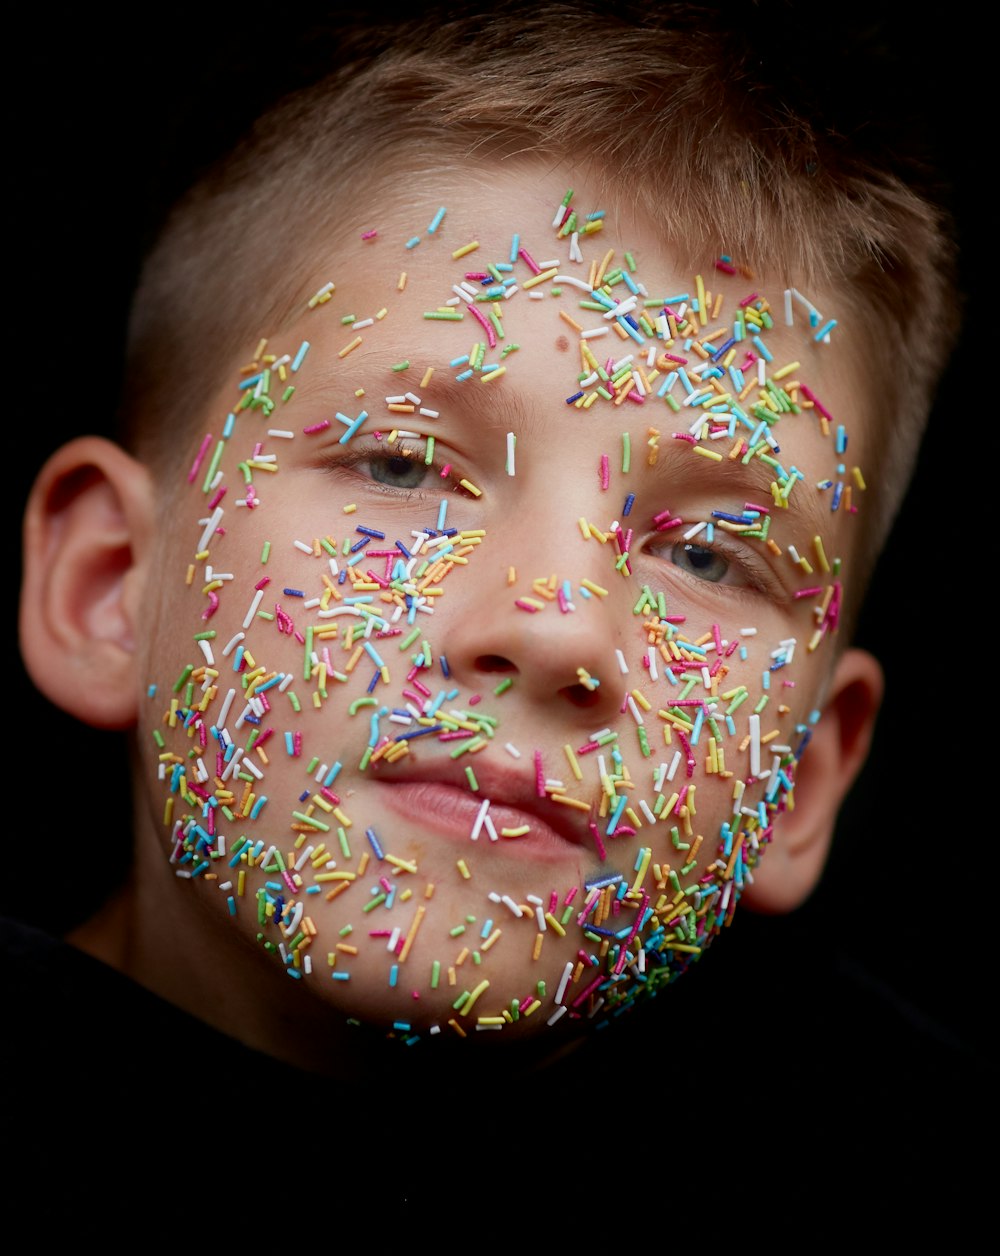 Bonbons d’arrosage de couleurs assorties sur le visage du garçon